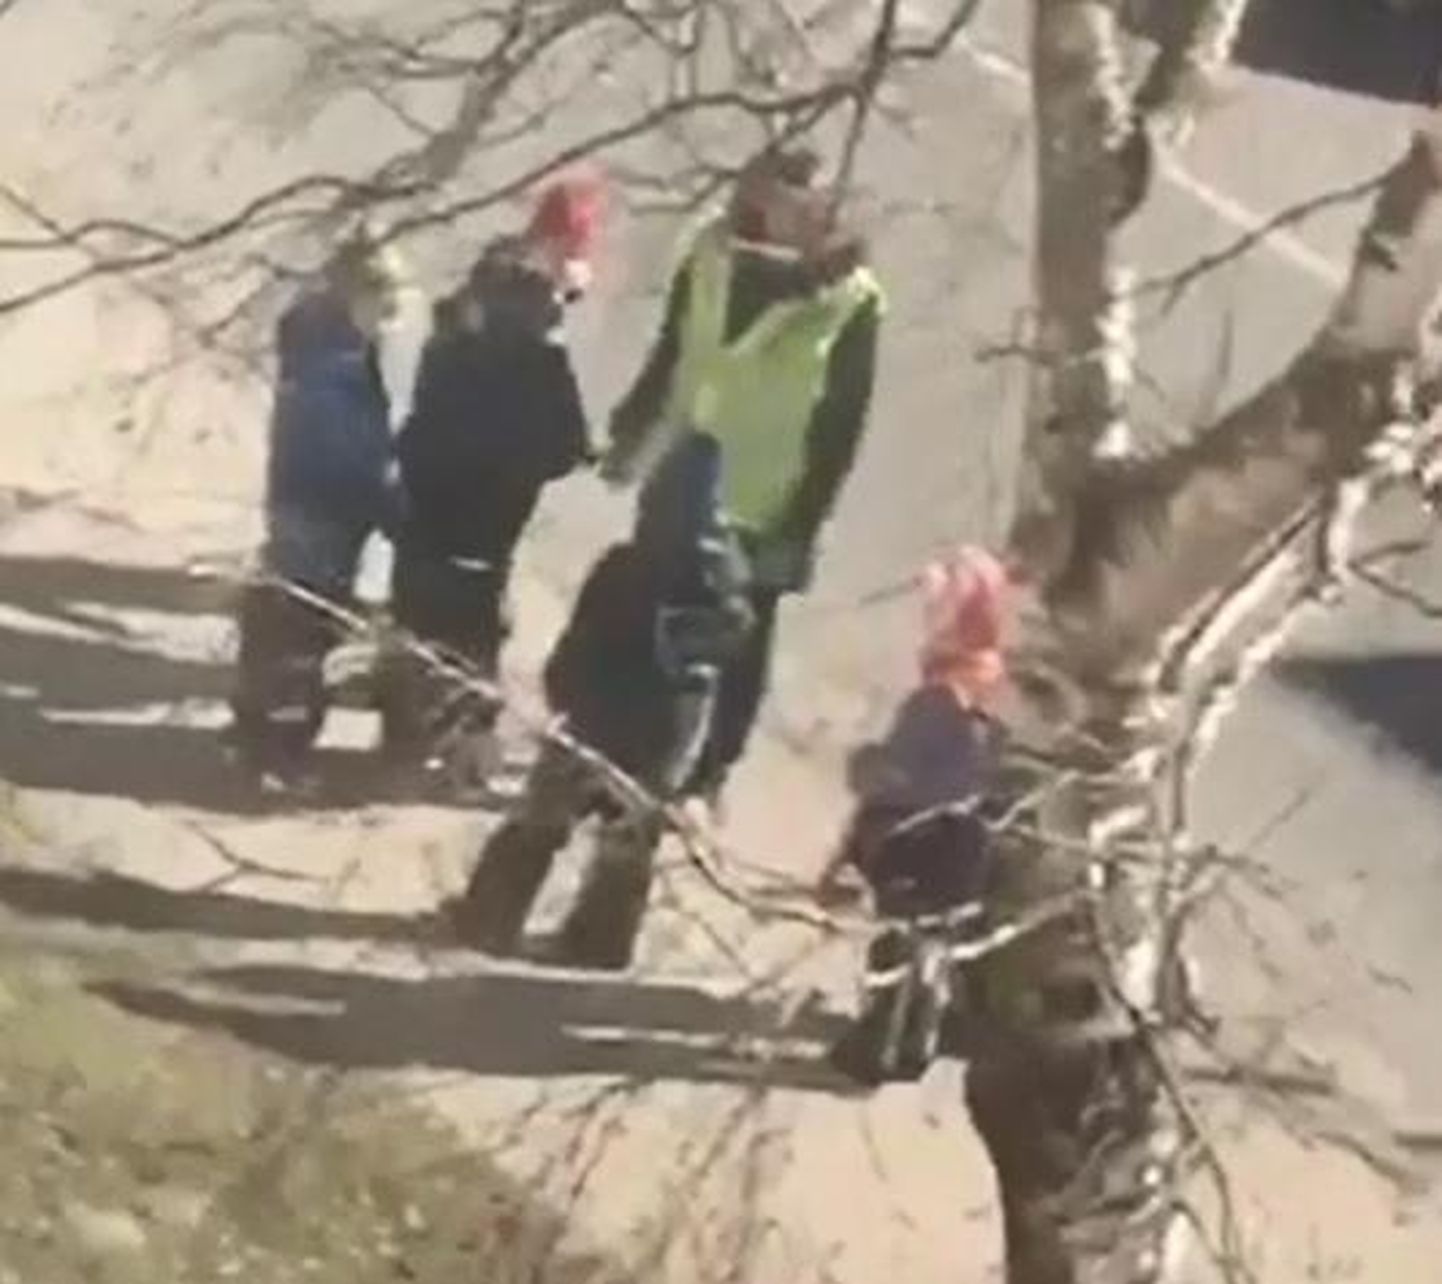 Facebooki grupis Märgatud24 Pärnus avaldati video, milles on näha, kuidas lastega jalutav täiskasvanu sakutab üht mudilastest nii jõuliselt, et laps hooga pikali kukub.